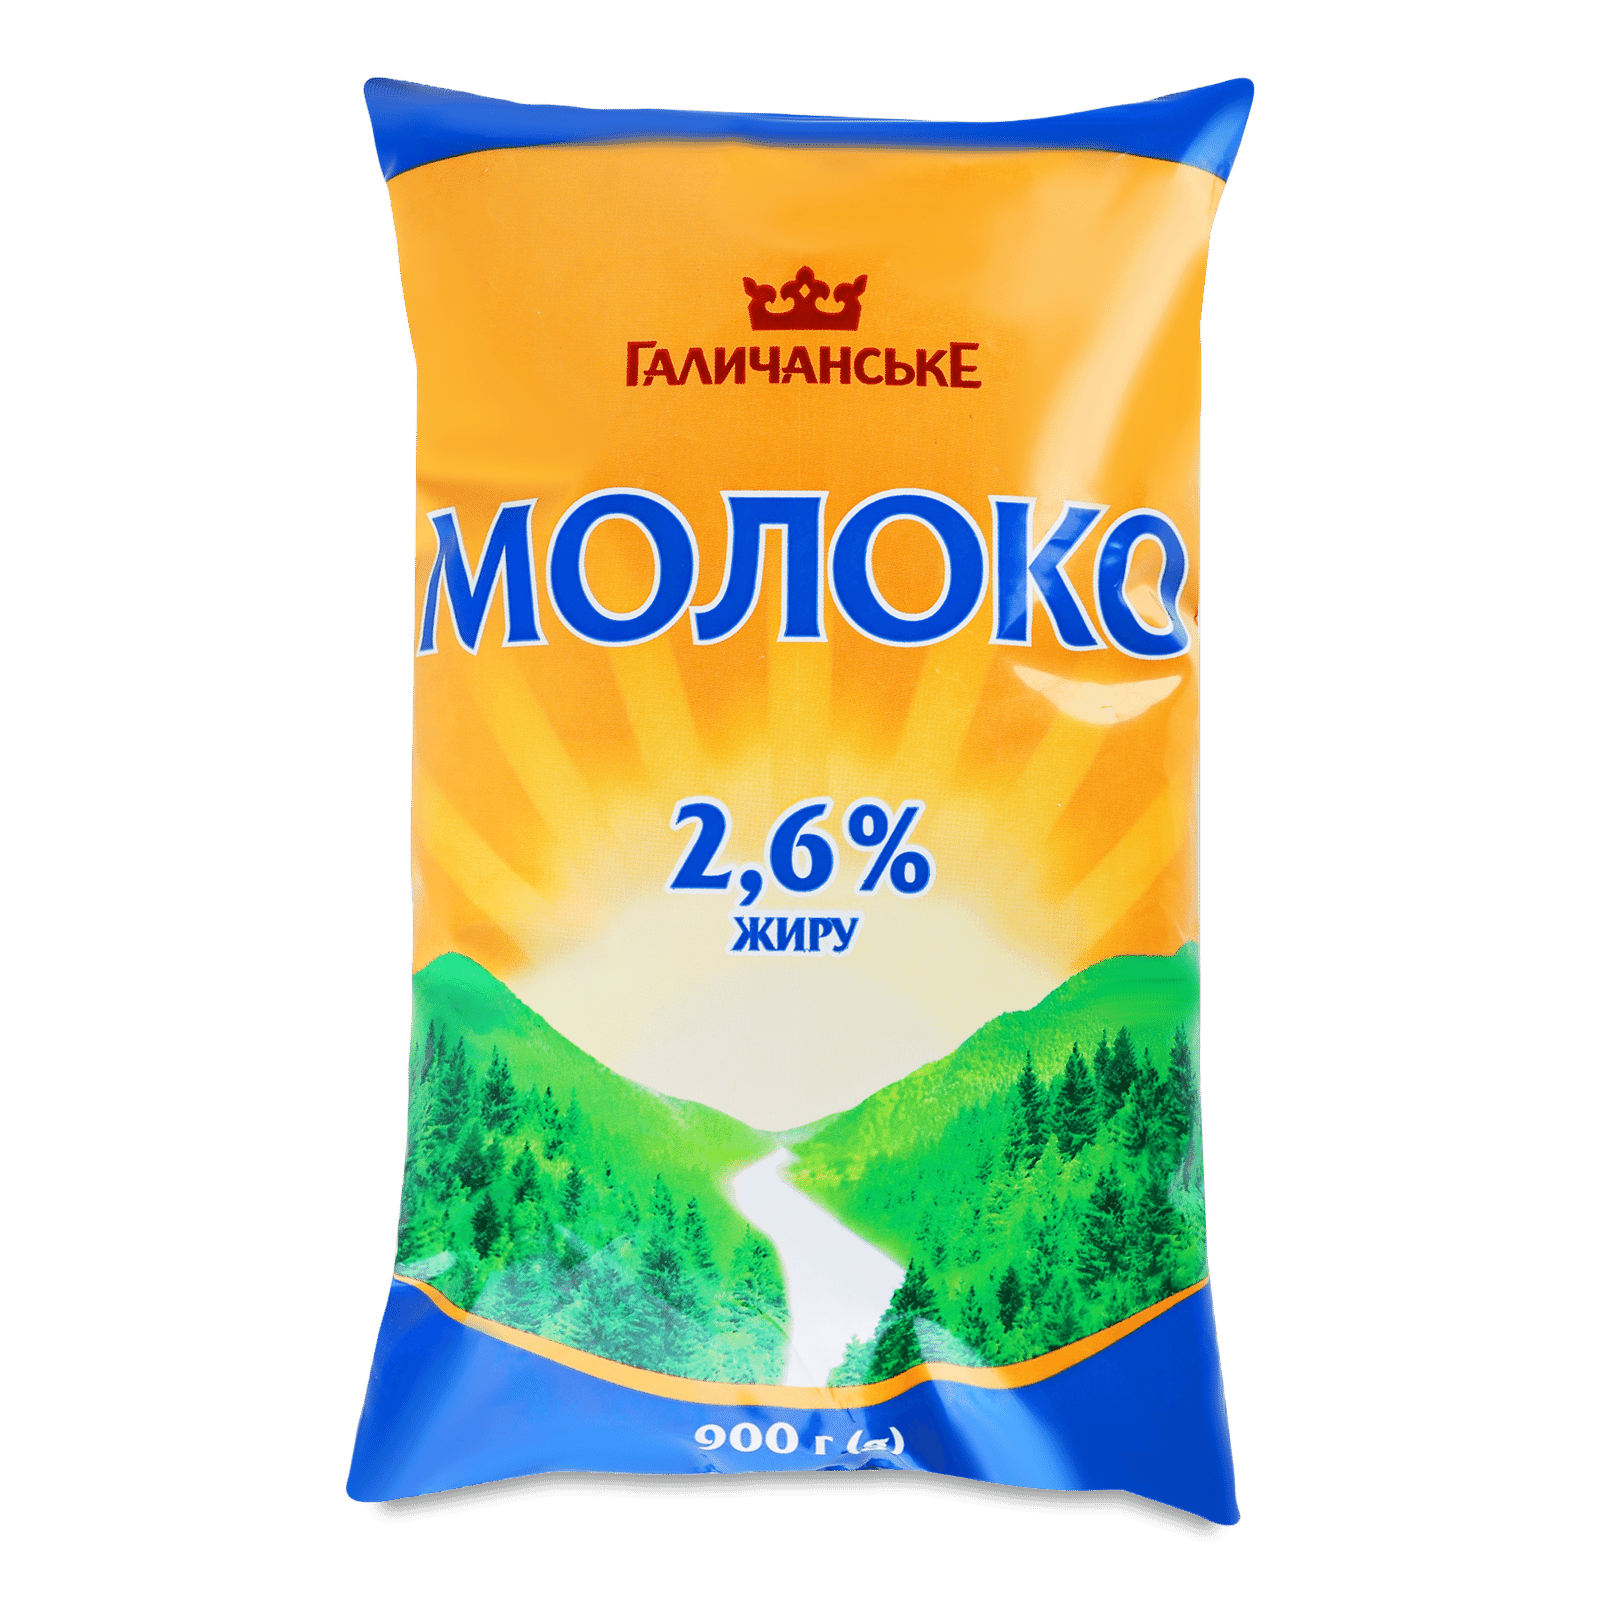 Молоко ГаличанськЕ українське 2,6% п/е - 1